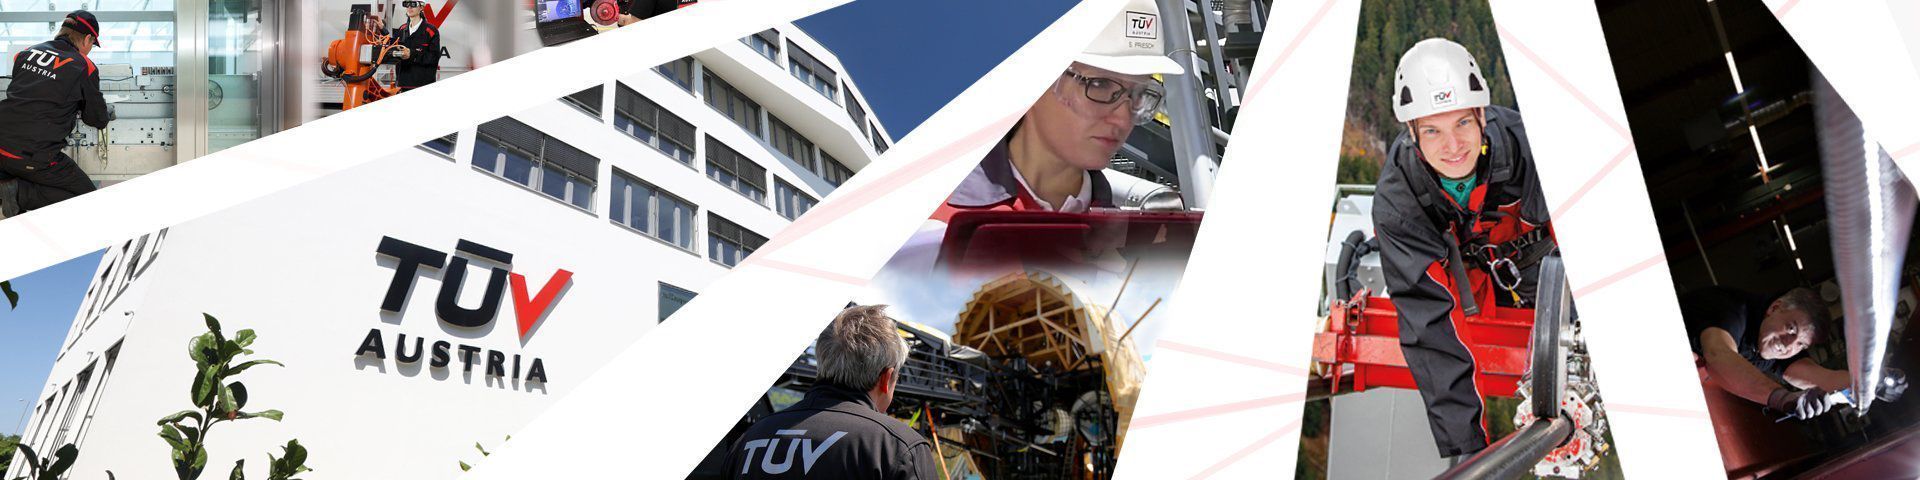 Wir sind TÜV AUSTRIA, Österreichs führendes sicherheitstechnisches Dienstleistungsunternehmen: innovativ, nachhaltig und unabhängig.

Du willst dabei sein?
Dann werde Teil unseres TÜV AUSTRIA Teams.
Starten wir gemeinsam durch! https://karriere.tuvaustria.com